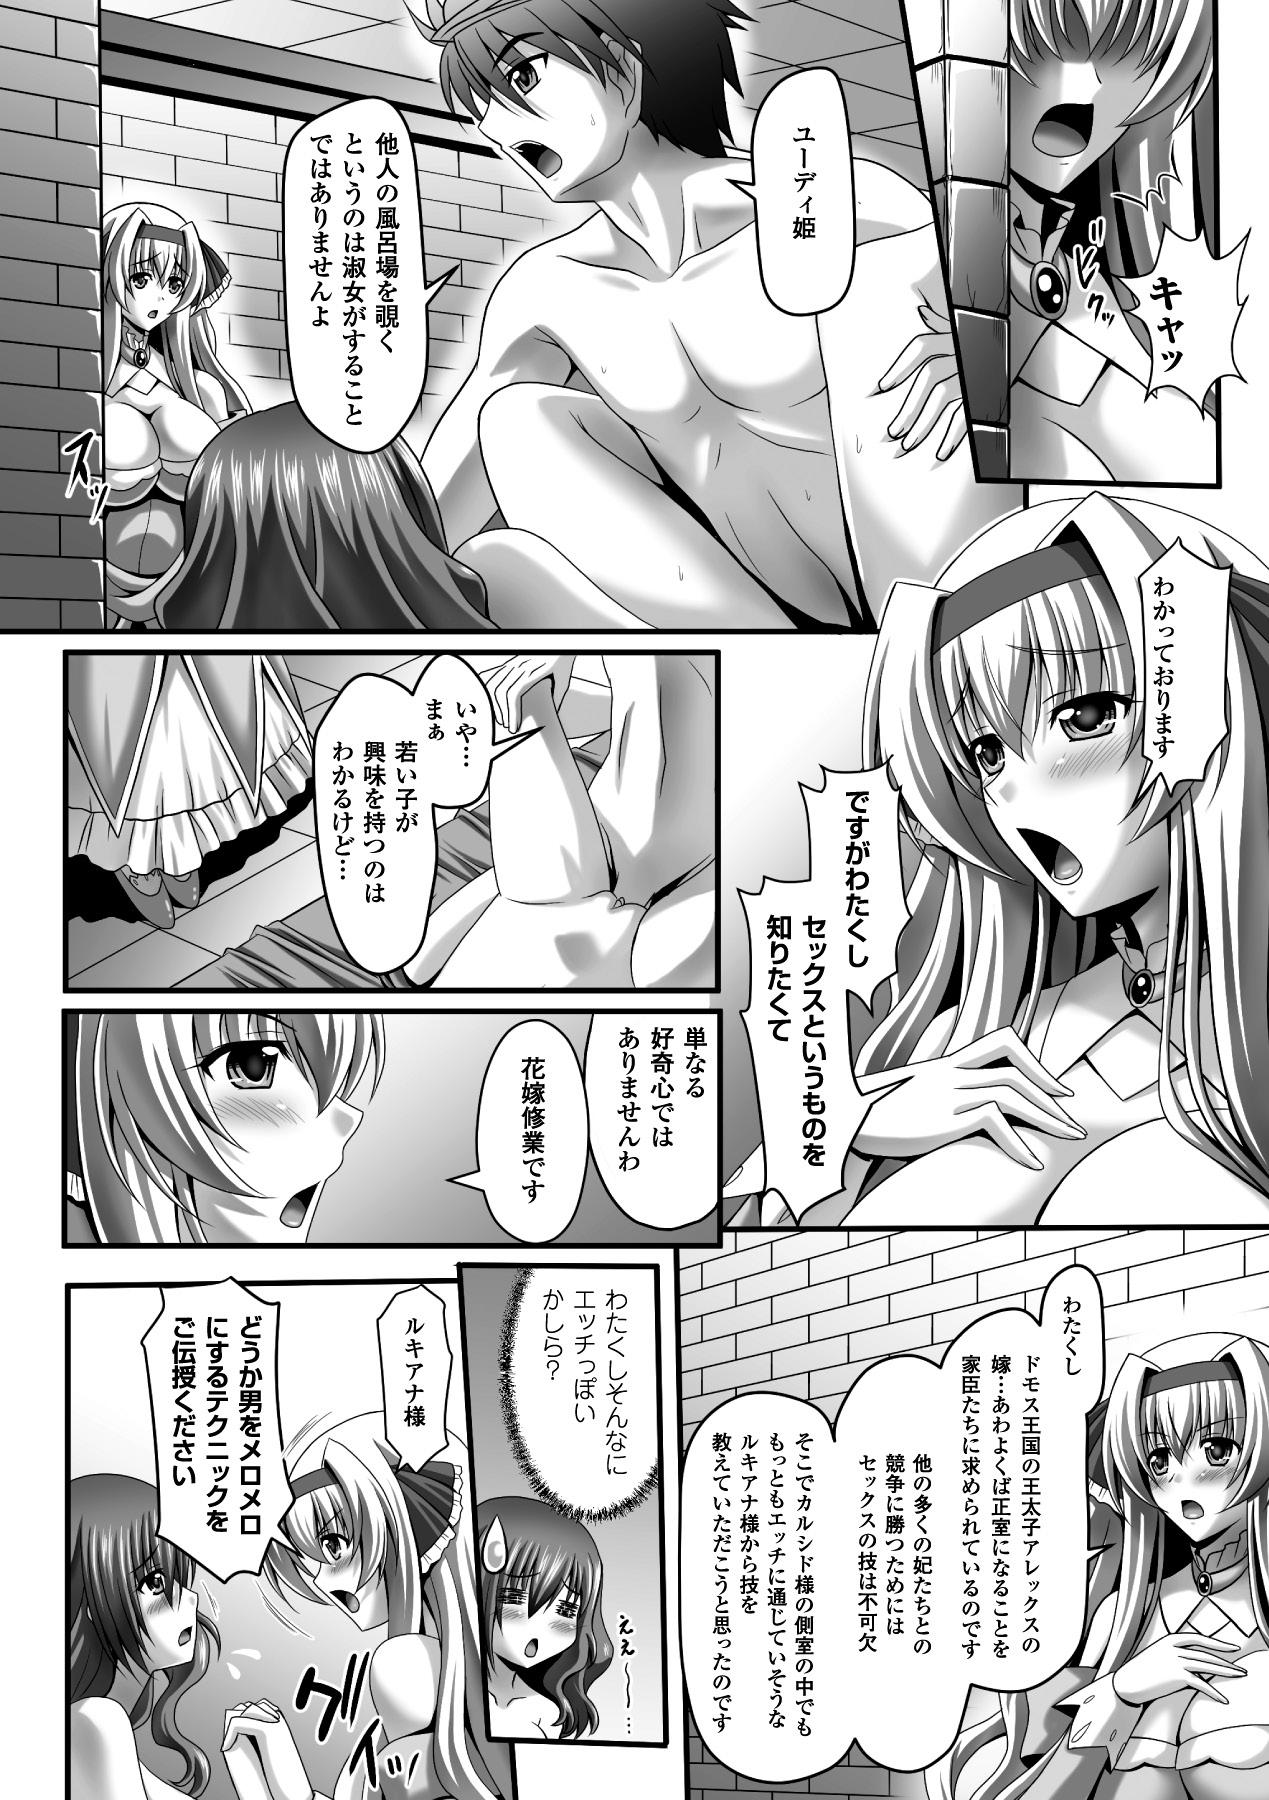 Mas Megami Crisis 14 - Taimanin asagi Culo Grande - Page 12